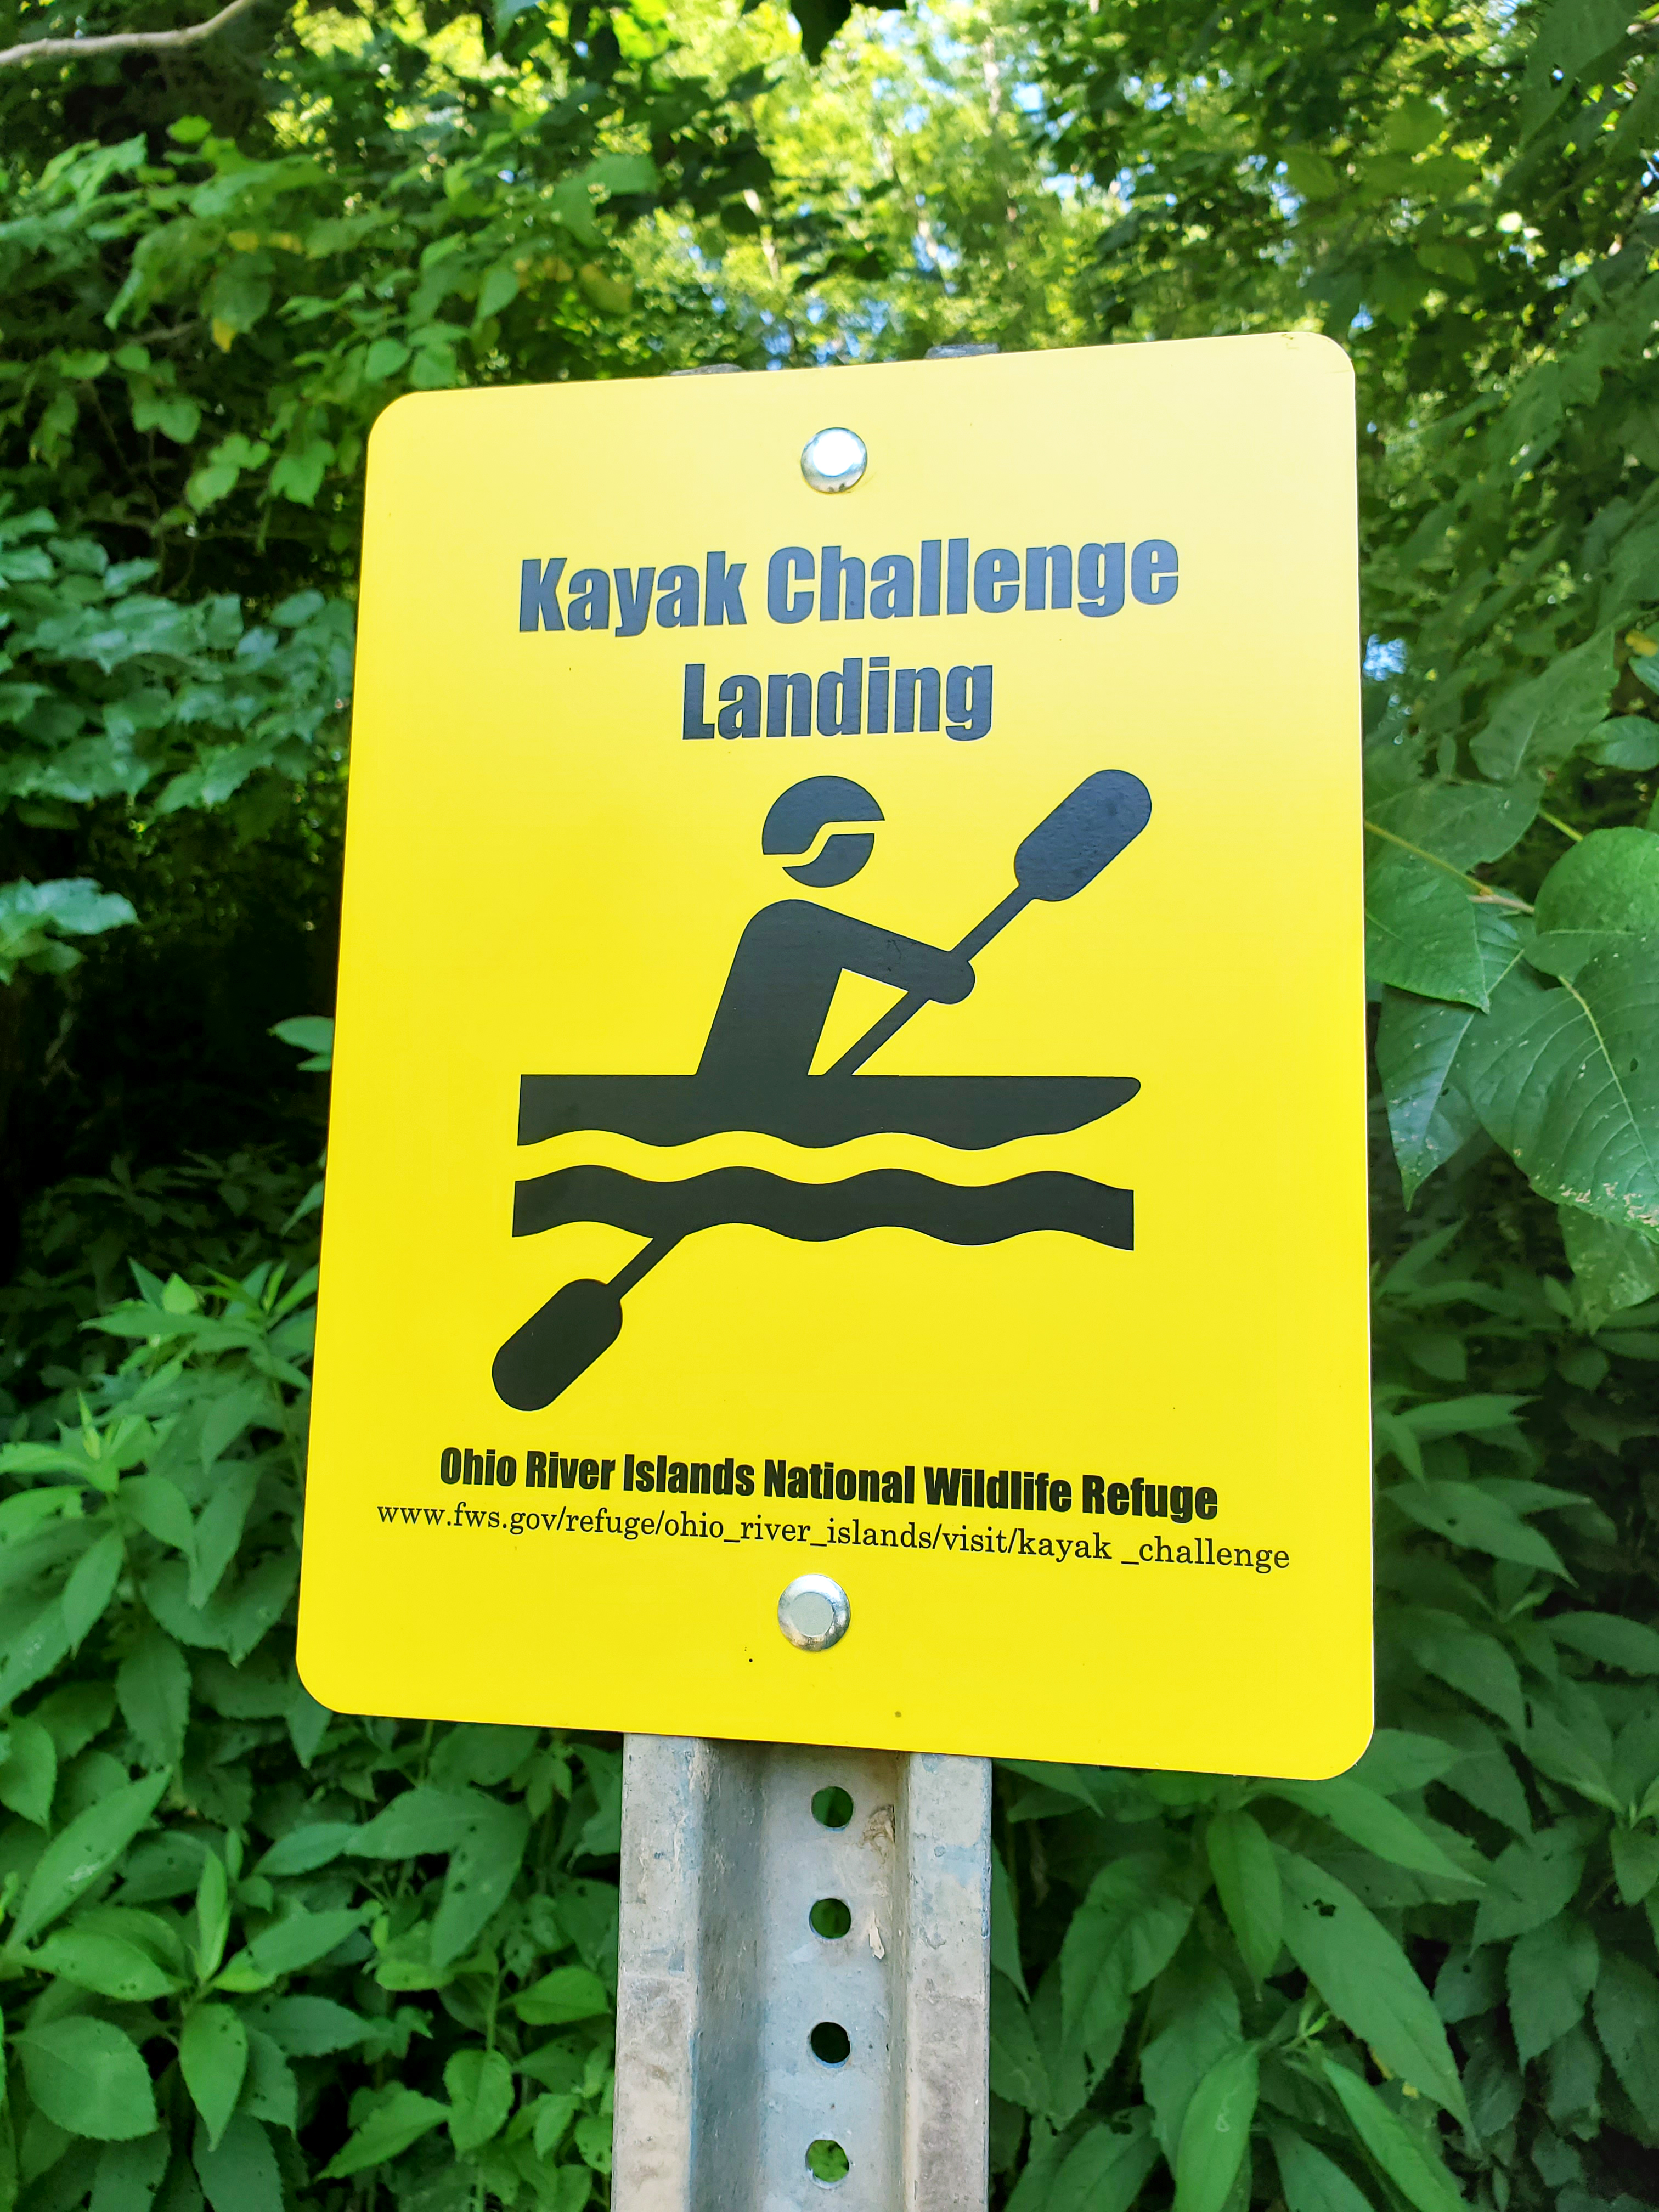 Kayak Challenge landing sign.